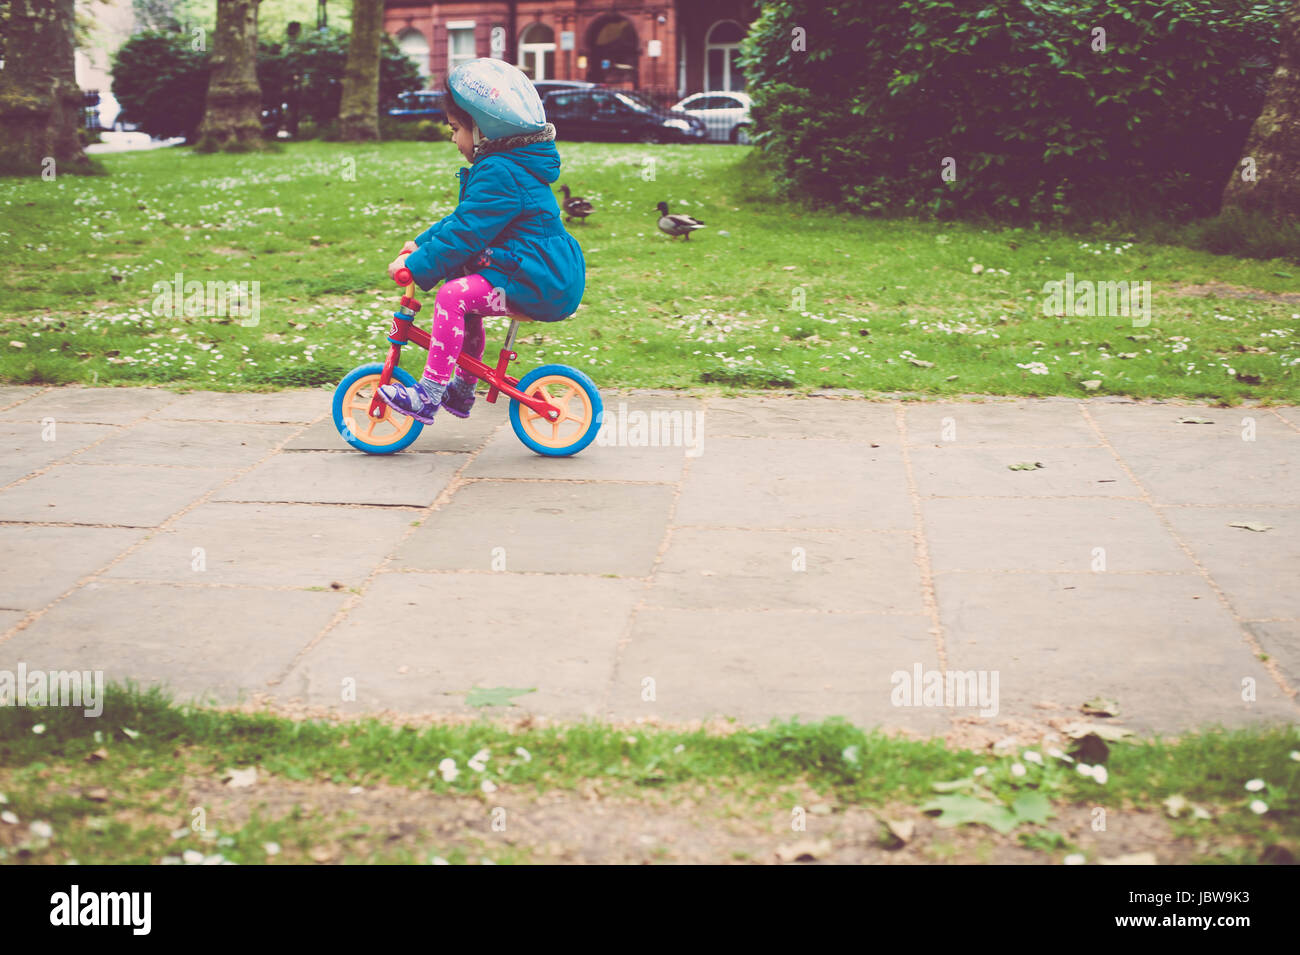 Jeune fille de quatre ans est de la suspendre le vélo dans le parc. Elle est d'apprendre à faire du vélo et elle porte un casque de sécurité. Banque D'Images